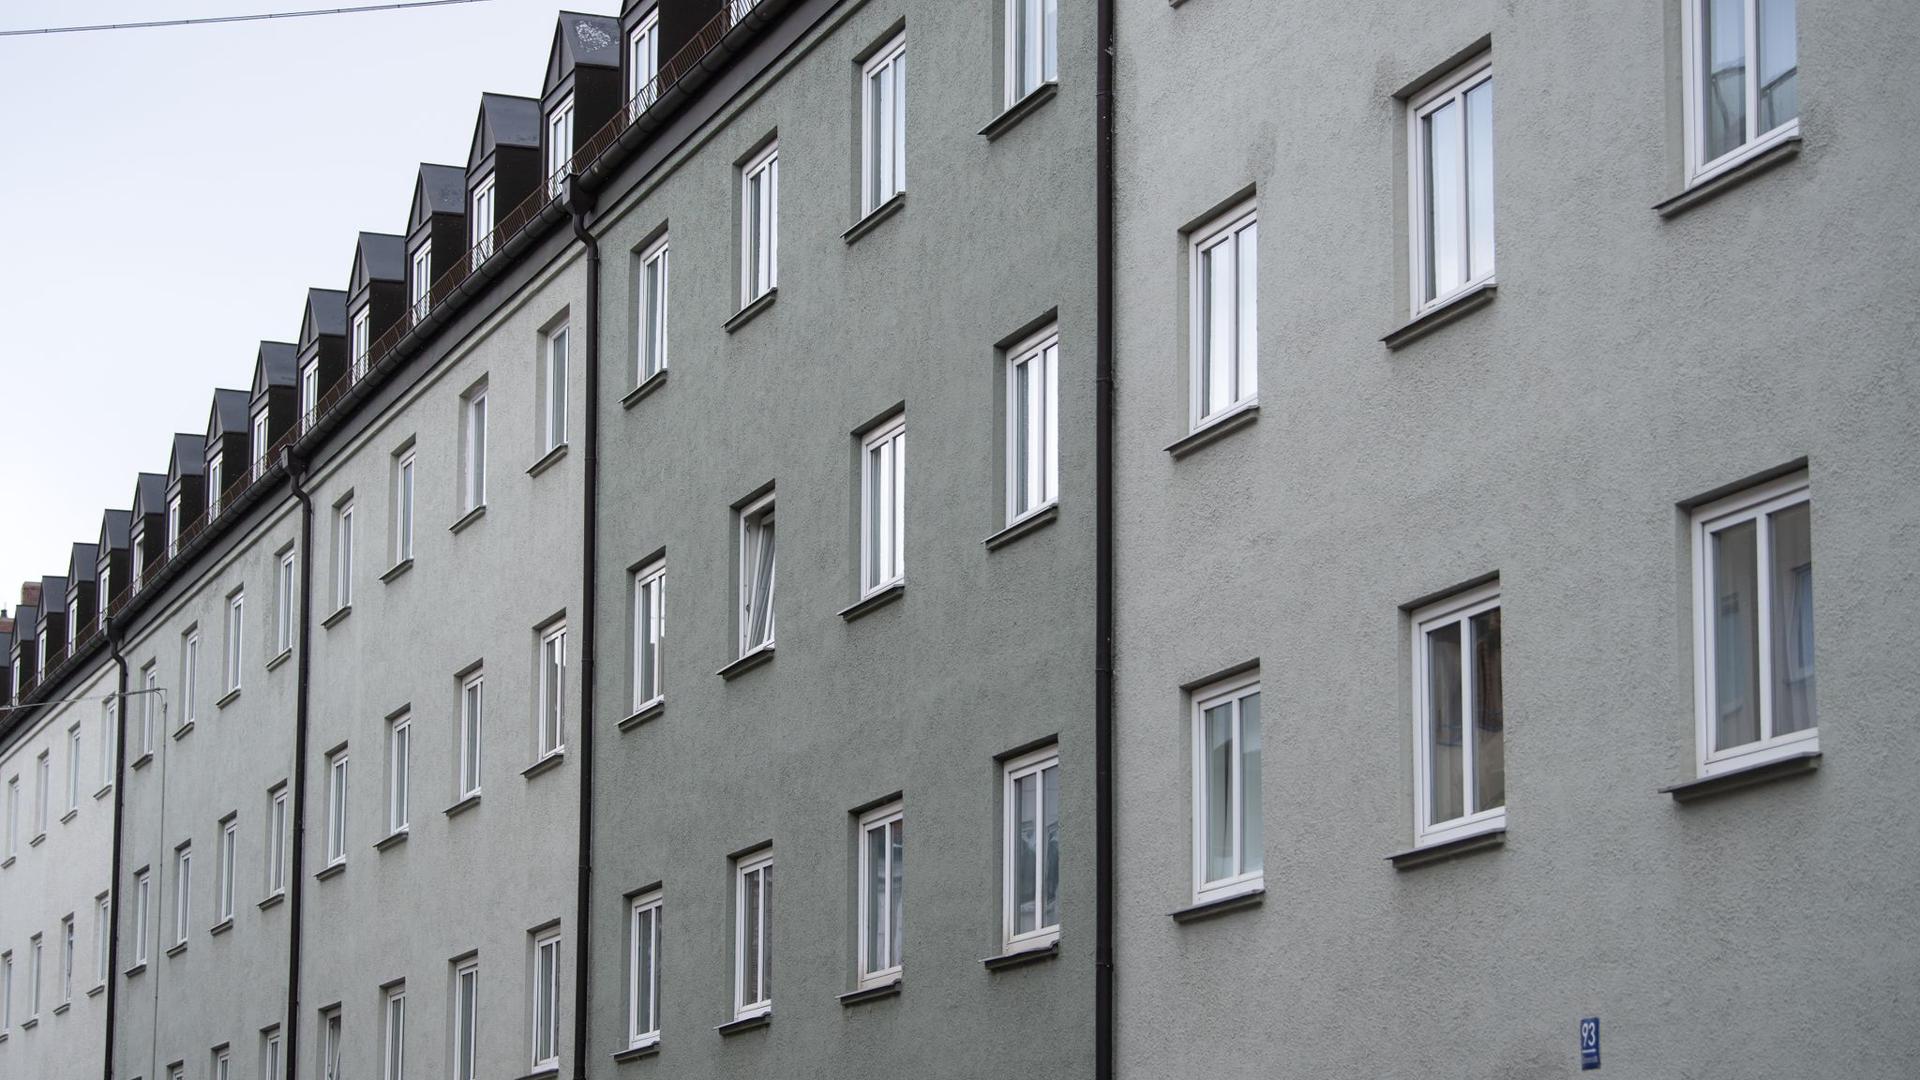 Die Mieten in der betroffenen Wohnanlage im Münchner Stadtteil Schwabing dürfen nach dem BGH-Urteil deutlich stärker steigen.